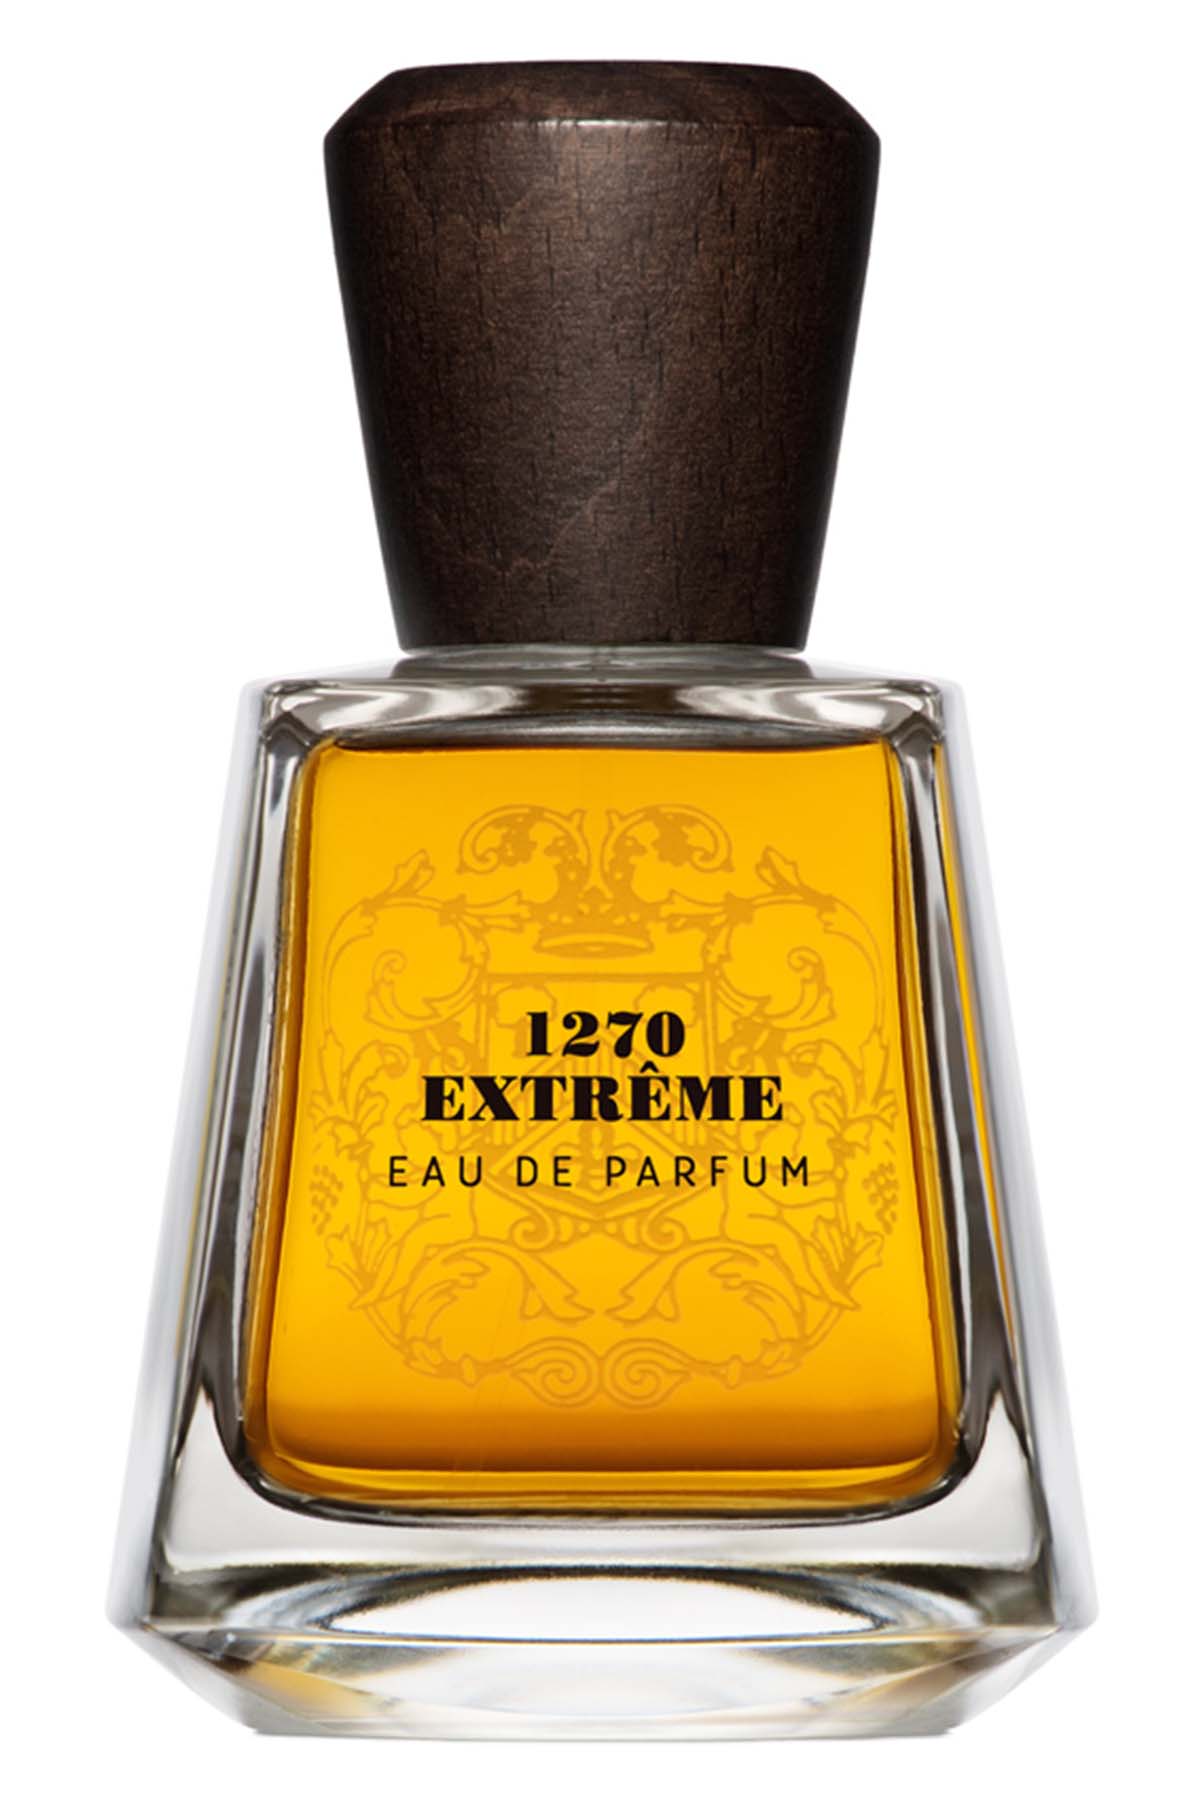 Frapin 1270 Extreme Eau de Parfum